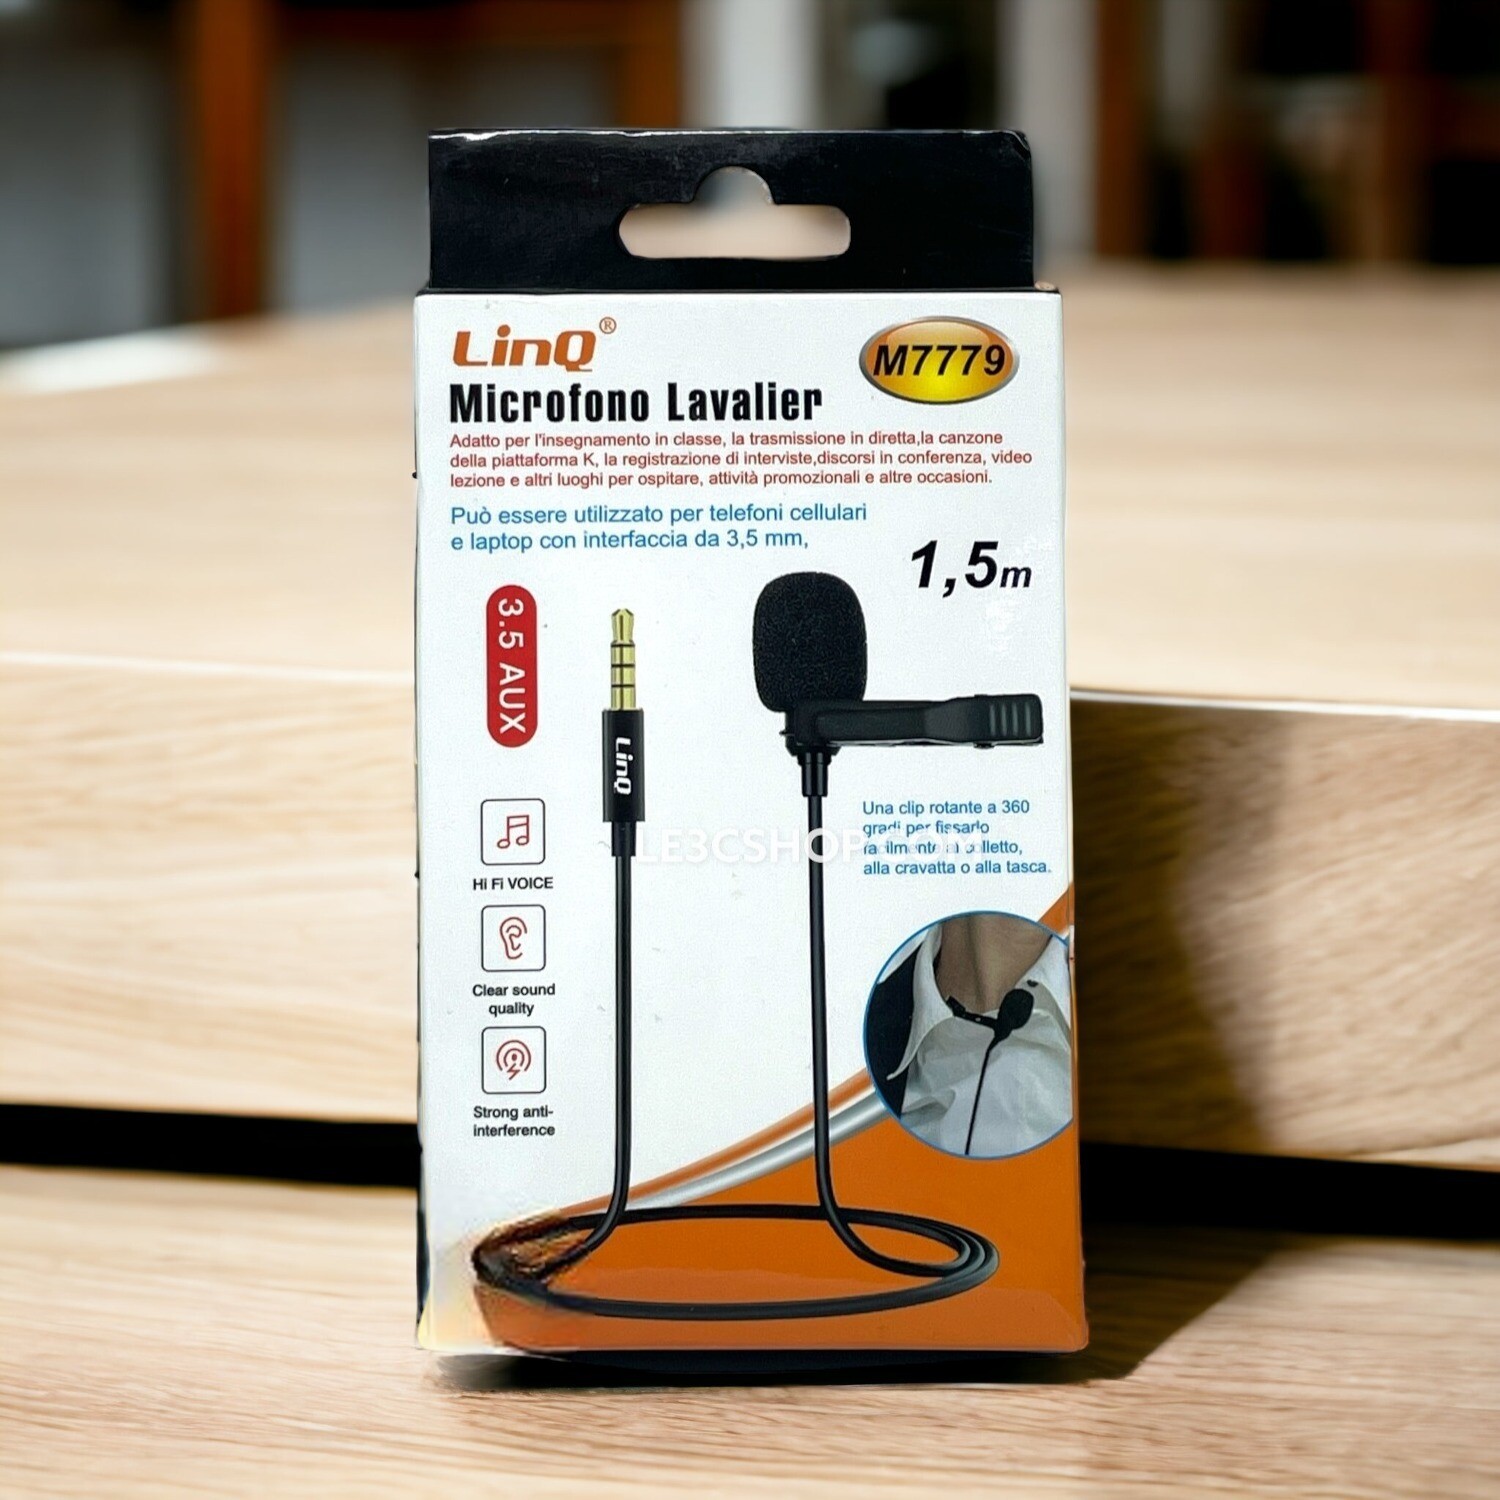 Il Microfono Lavalier M7779 di Linq: Audio Professionale, Connettività Universale!